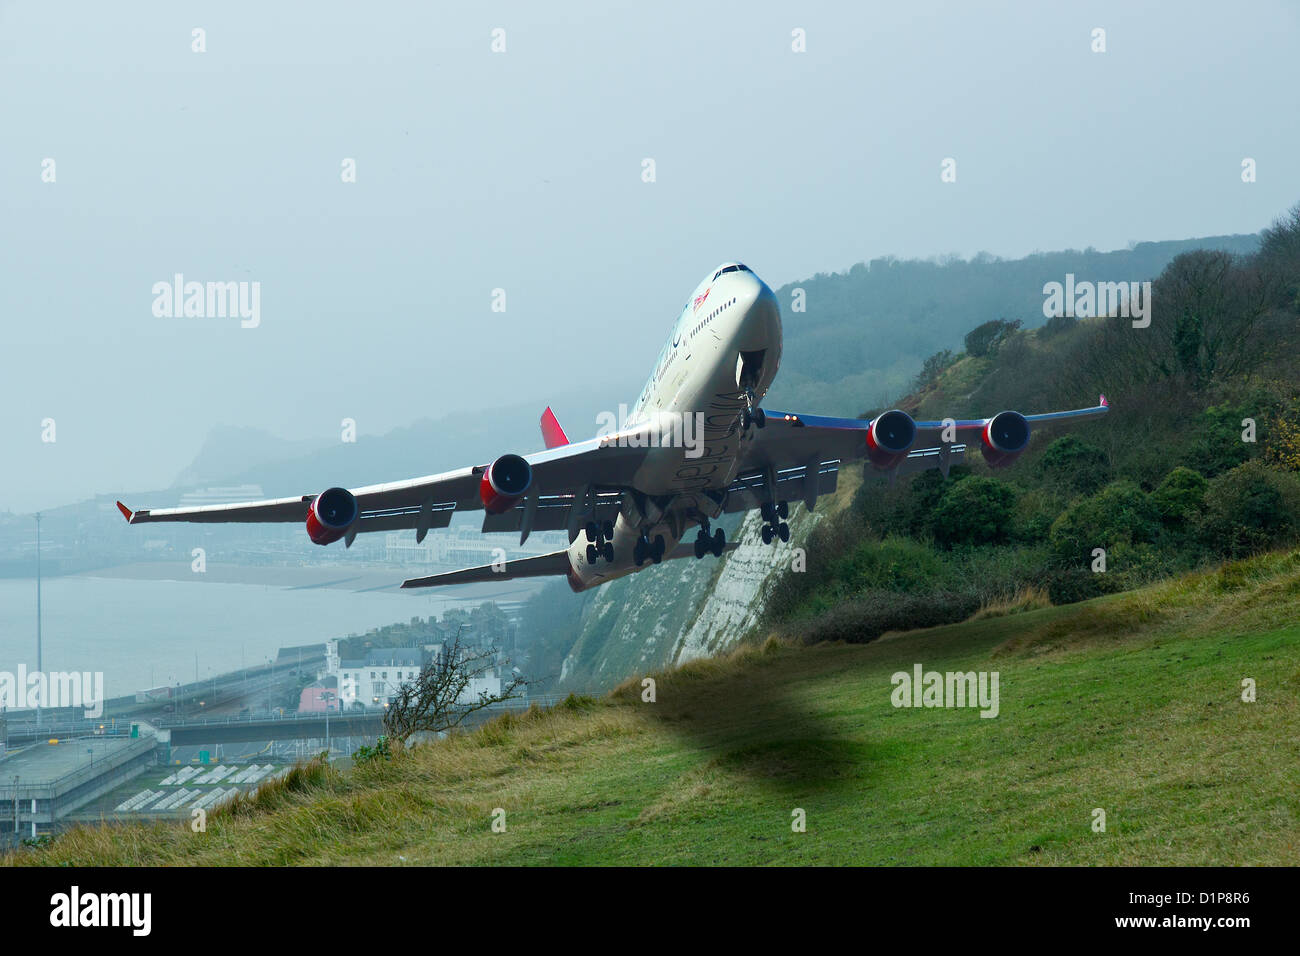 Une image composite montrant comment la décoller d'un aéroport peut paraître fictive Dover Banque D'Images